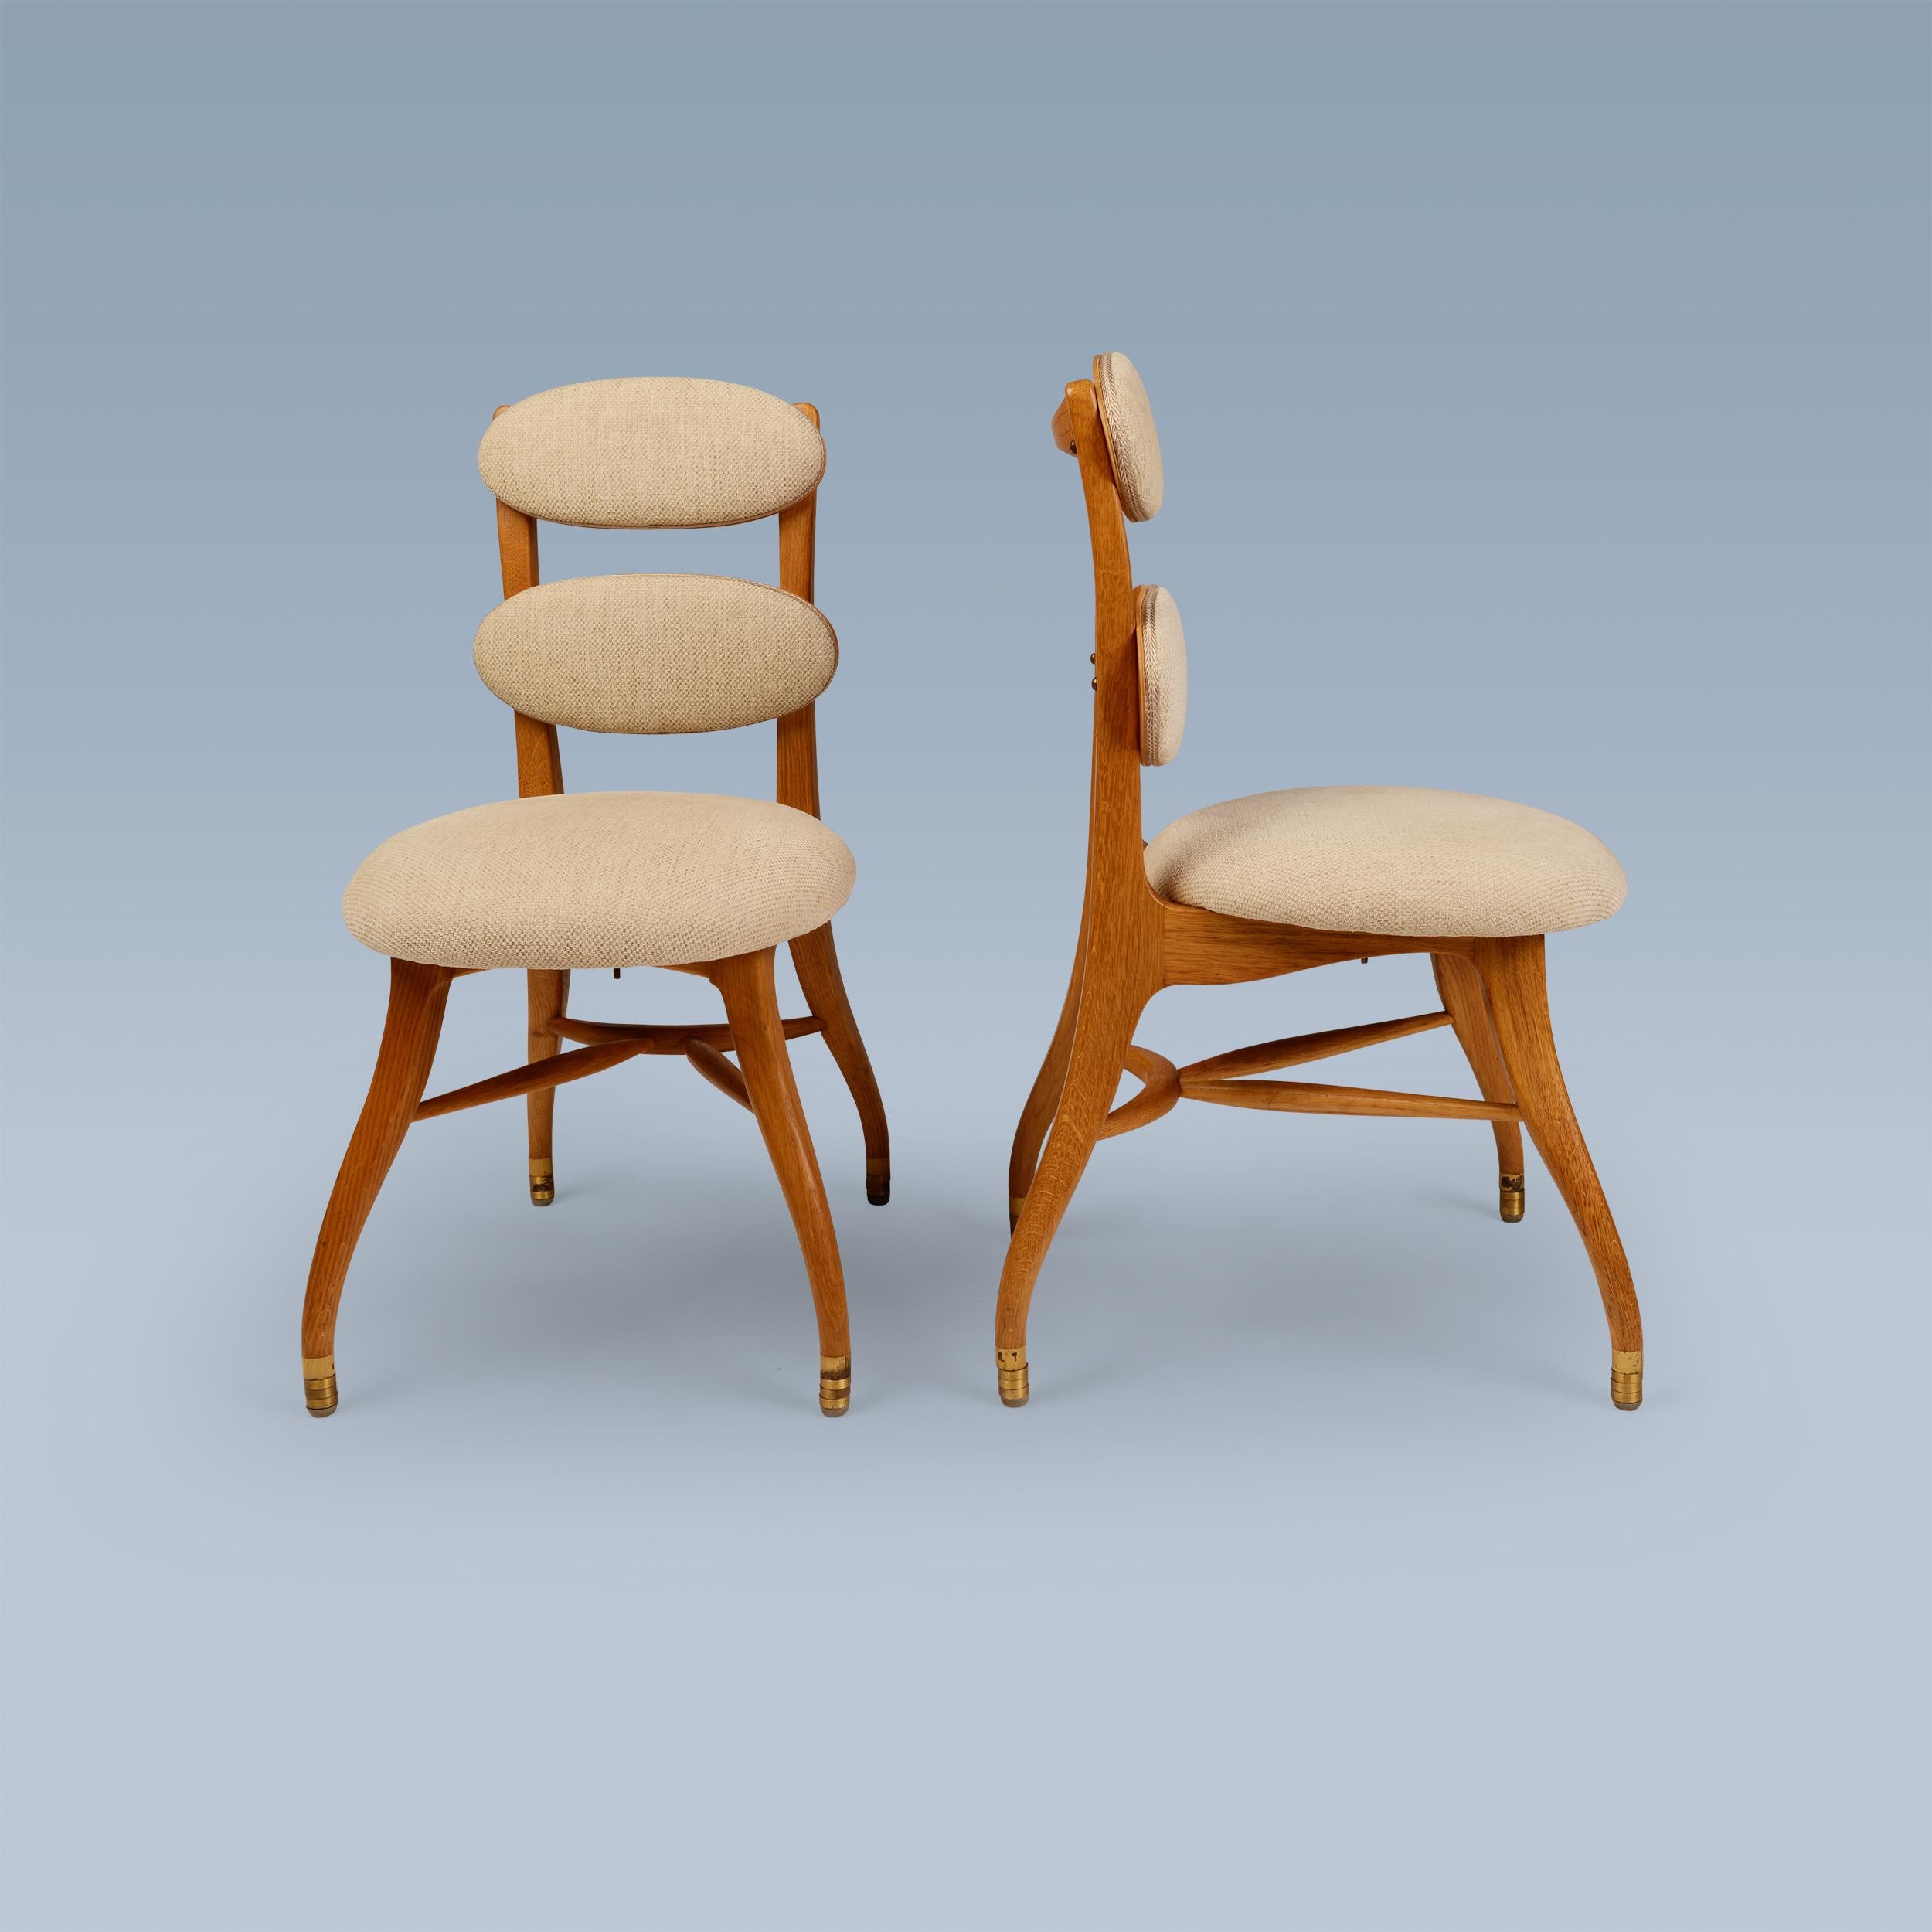 Dieses Paar sehr seltener Stühle wurde 1942 von Vilhelm Lauritzen für das kultige Radiohuset-Gebäude in Kopenhagen entworfen. Sie sind für die Musiker / das Orchester konzipiert. Sie haben einen Eichenrahmen und Messingfüße. Ihre Sitze und zwei